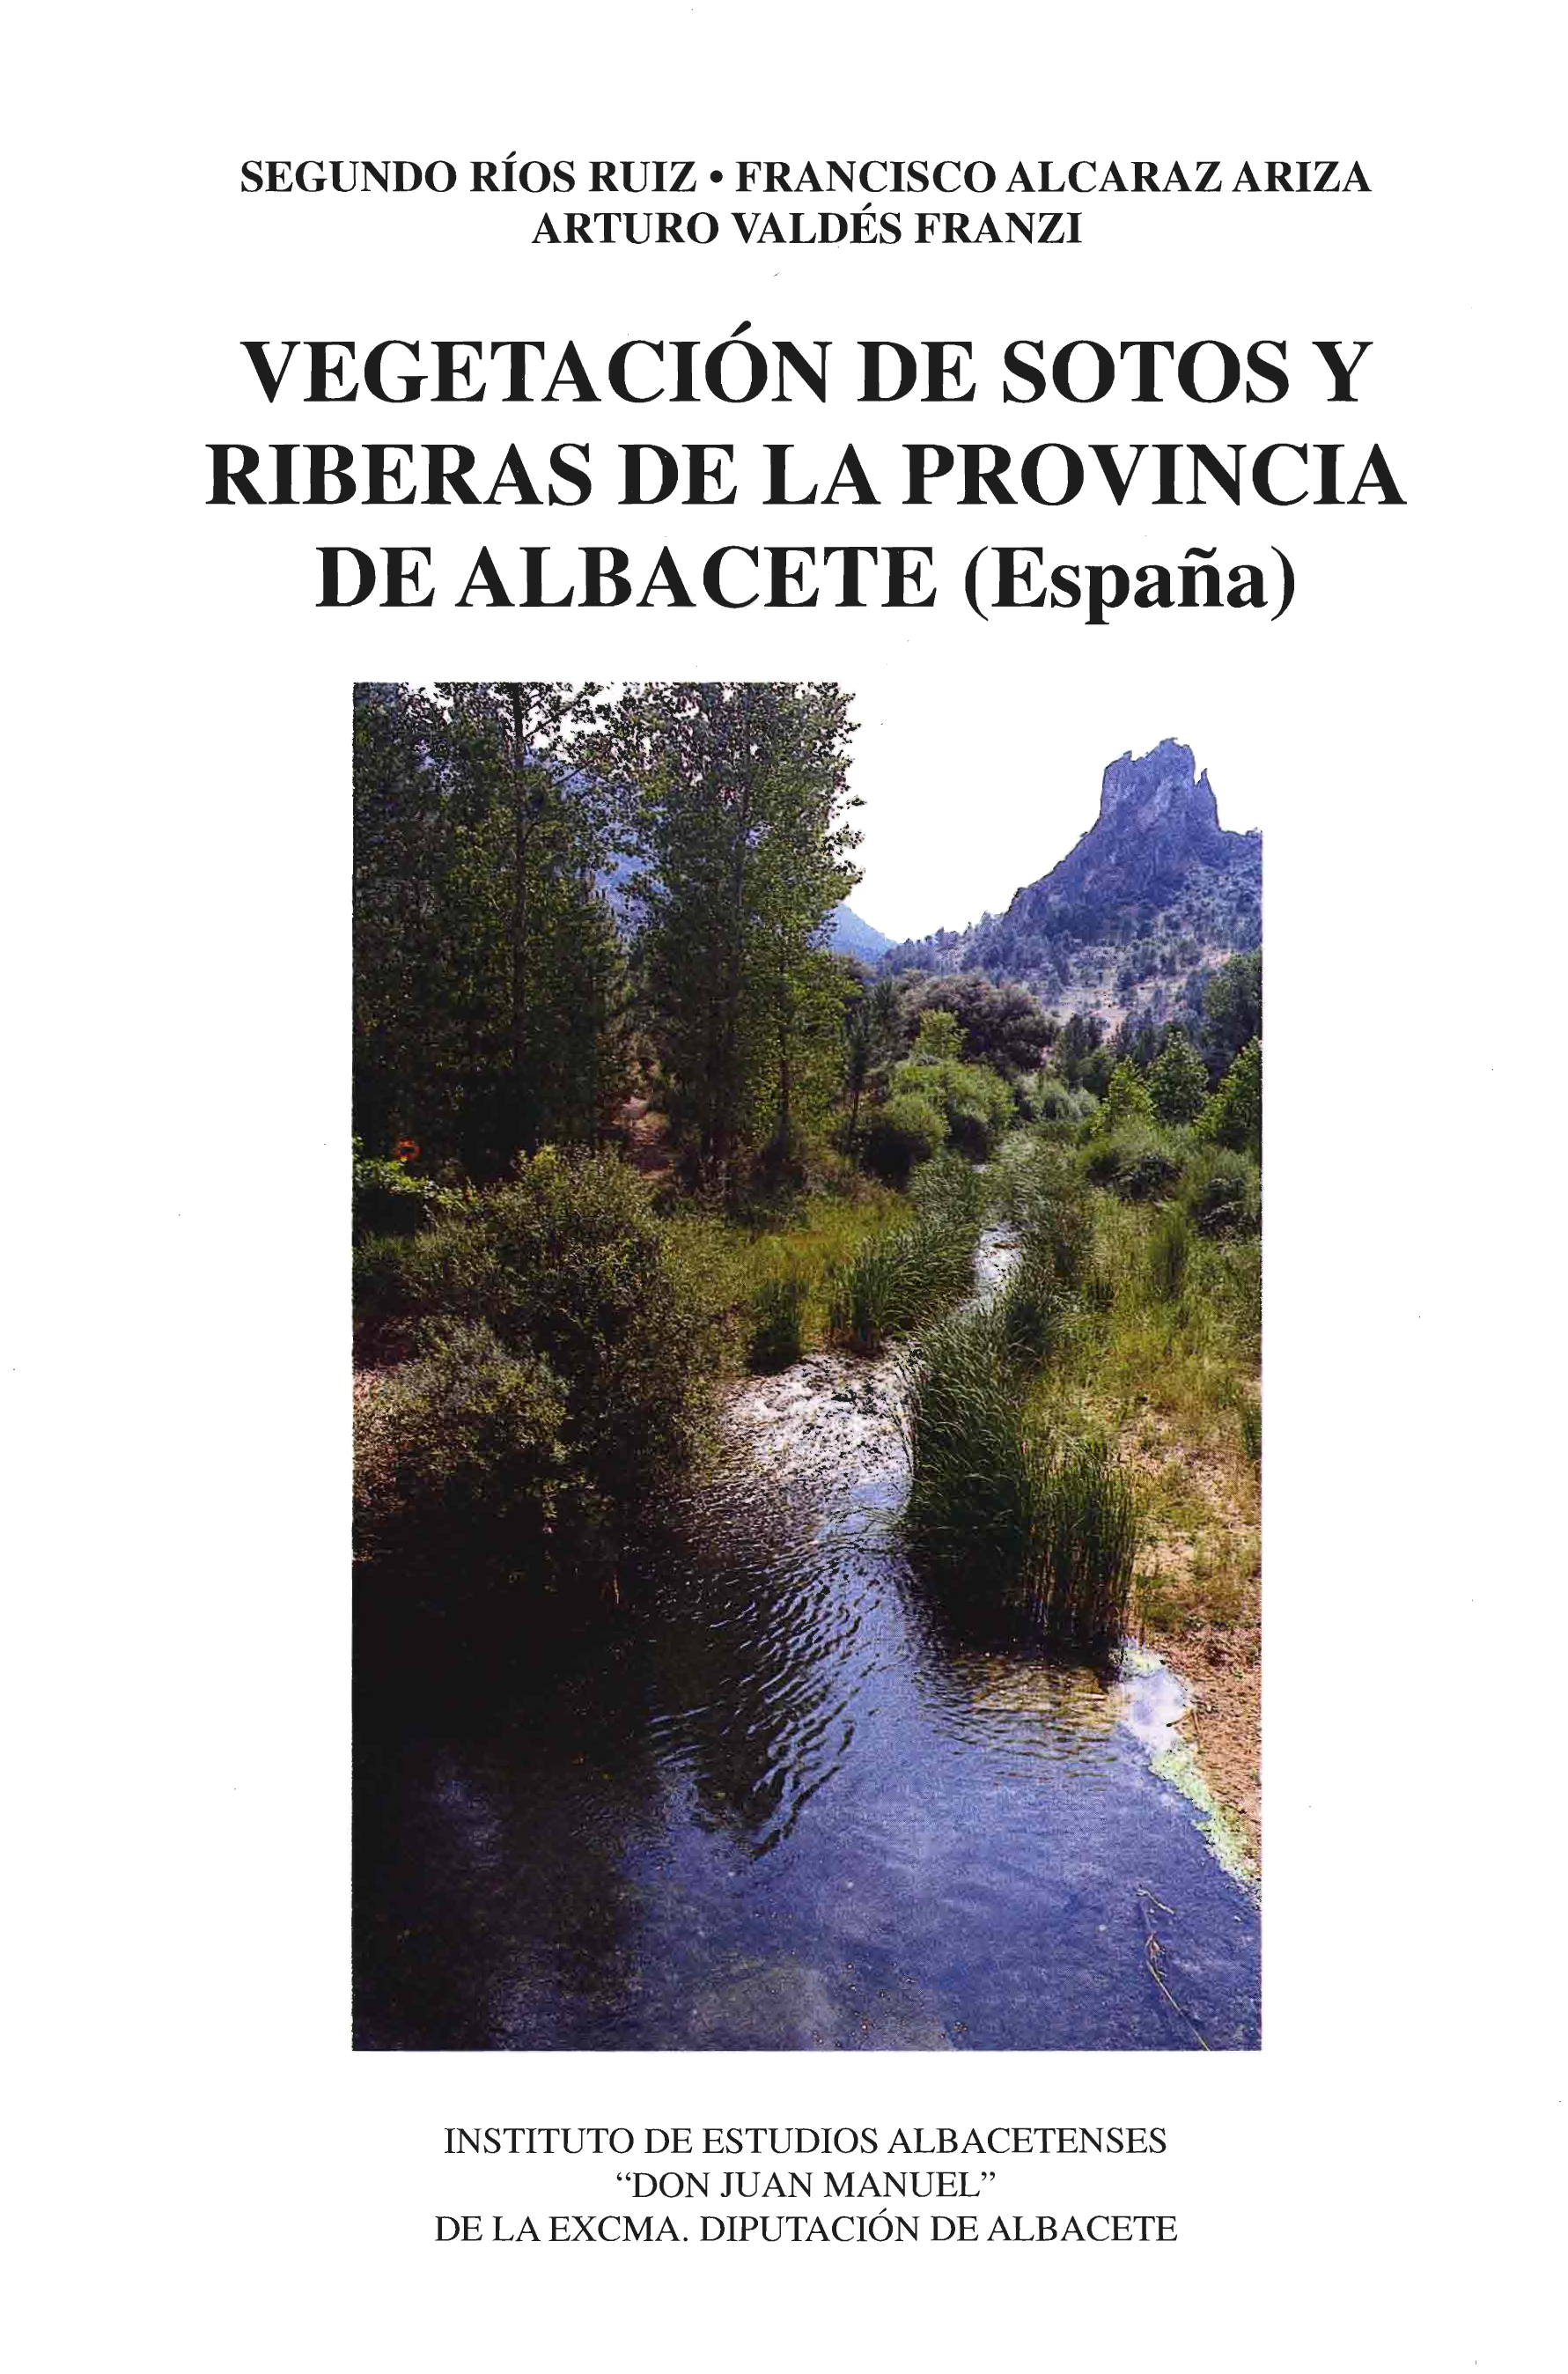 Imagen de portada del libro Vegetación de sotos y riberas de la provincia de Albacete (España)